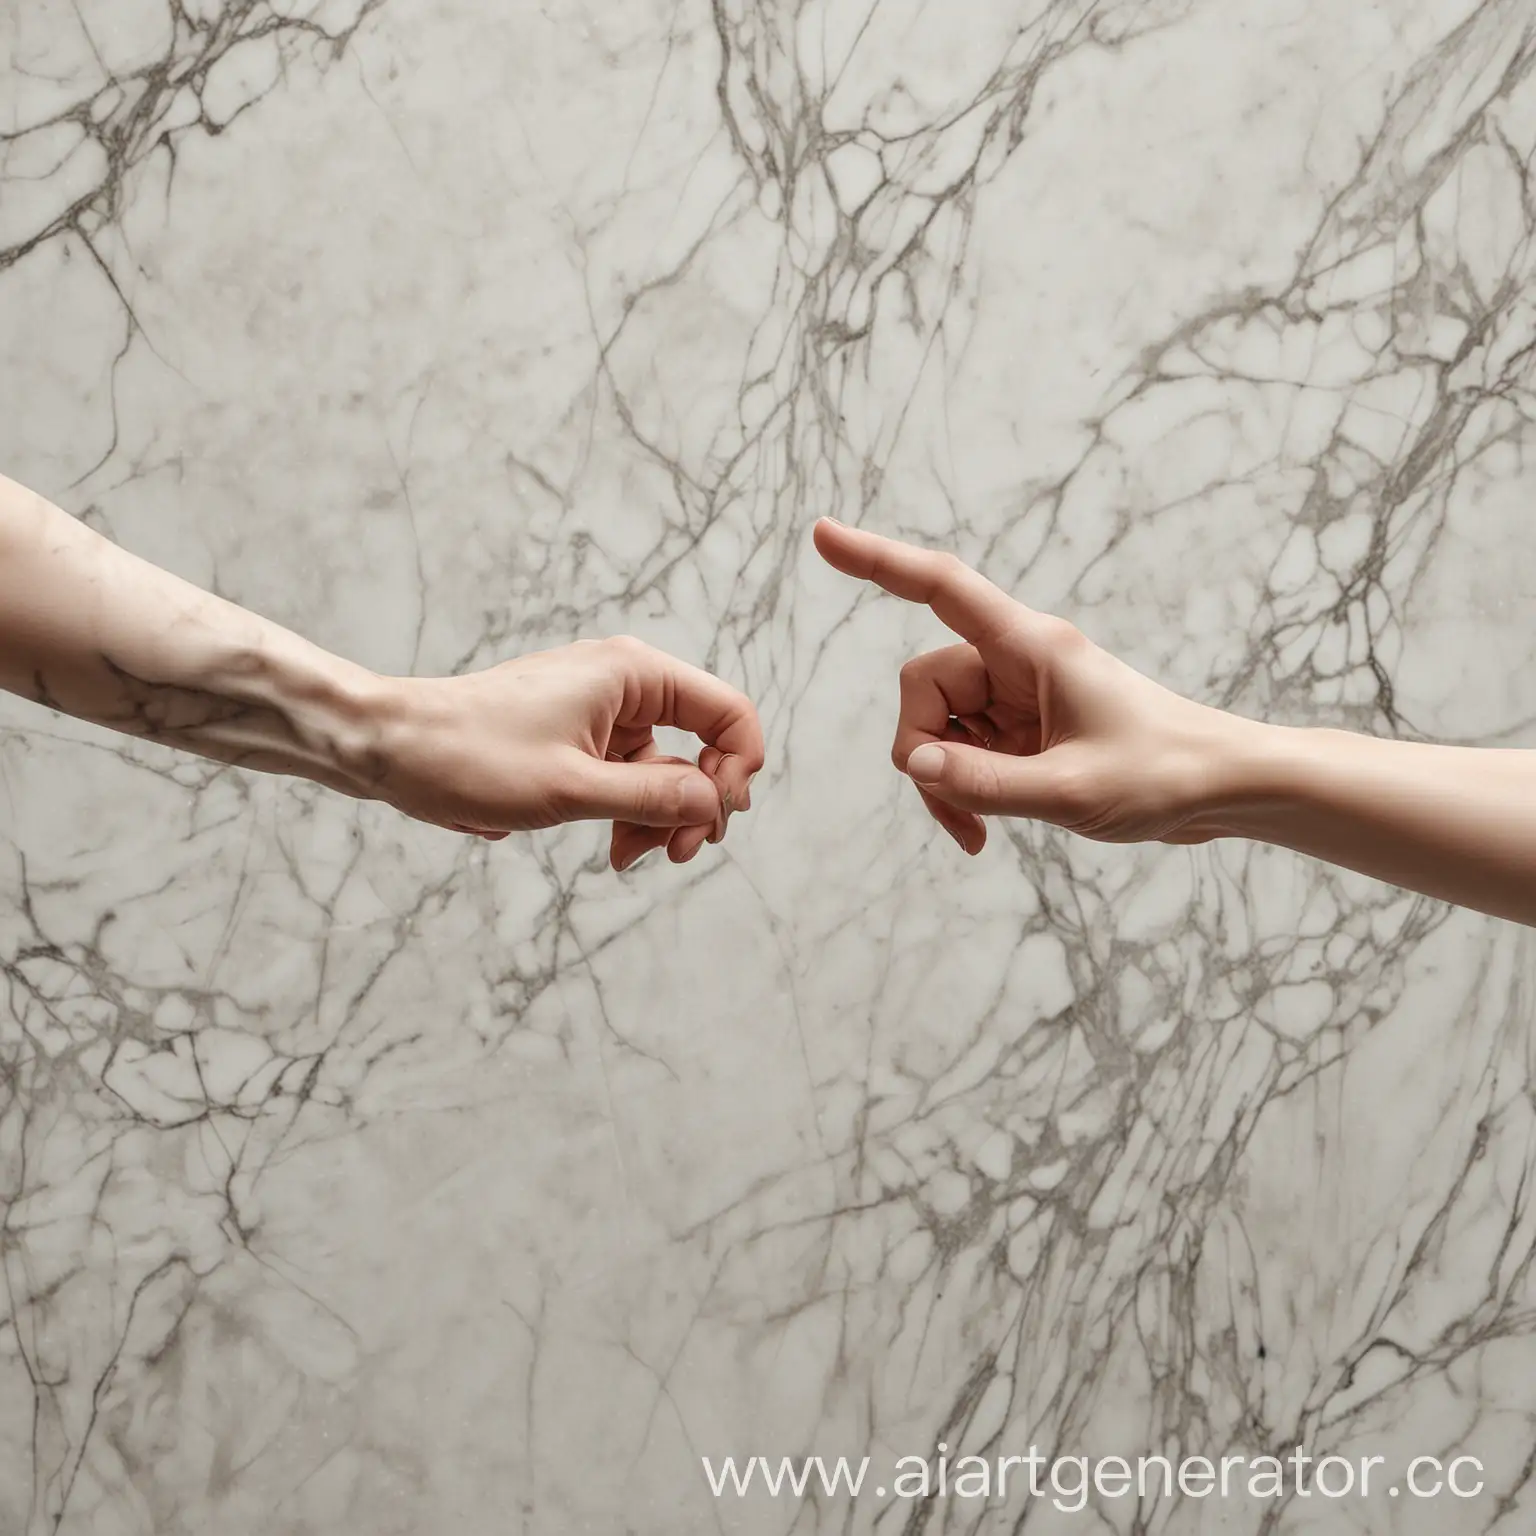 две руки из мрамора тянуться друг к другу указательными пальцами